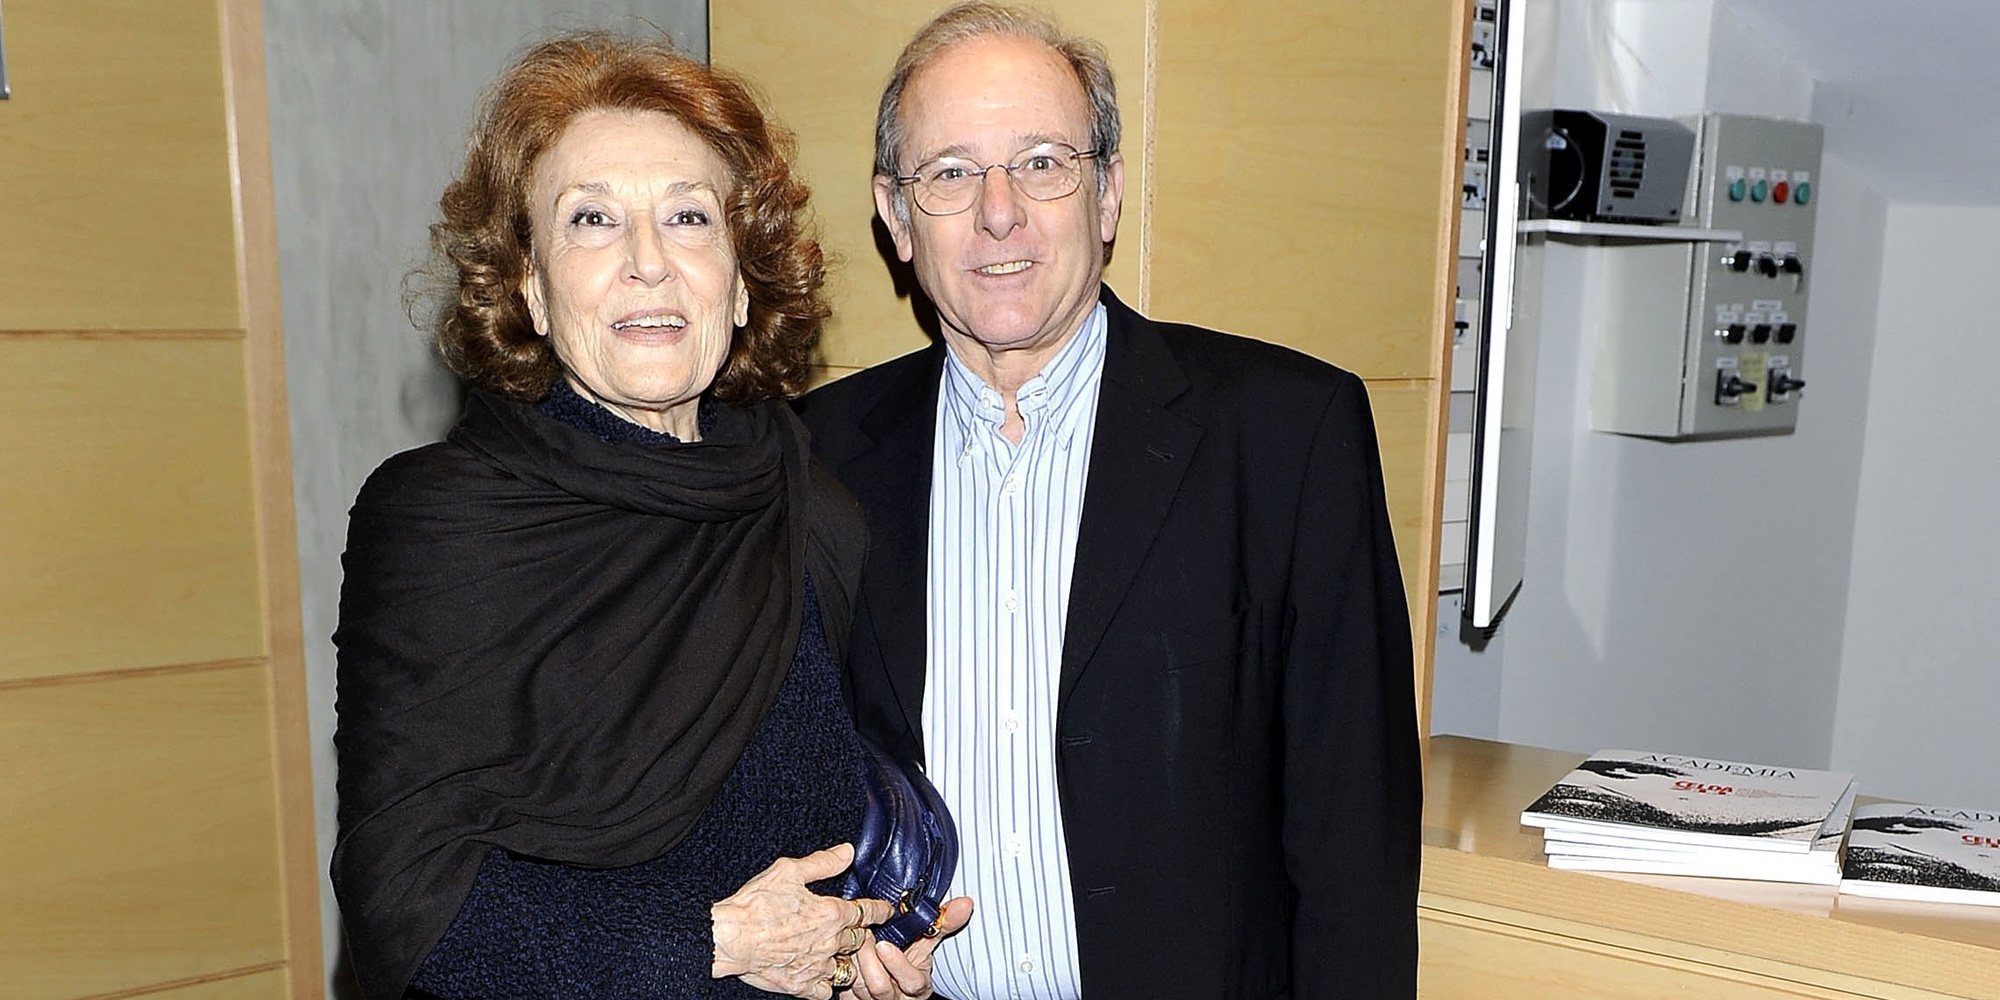 Los hermanos Julia y Emilio Gutiérrez Caba, Premio Feroz de Honor 2020